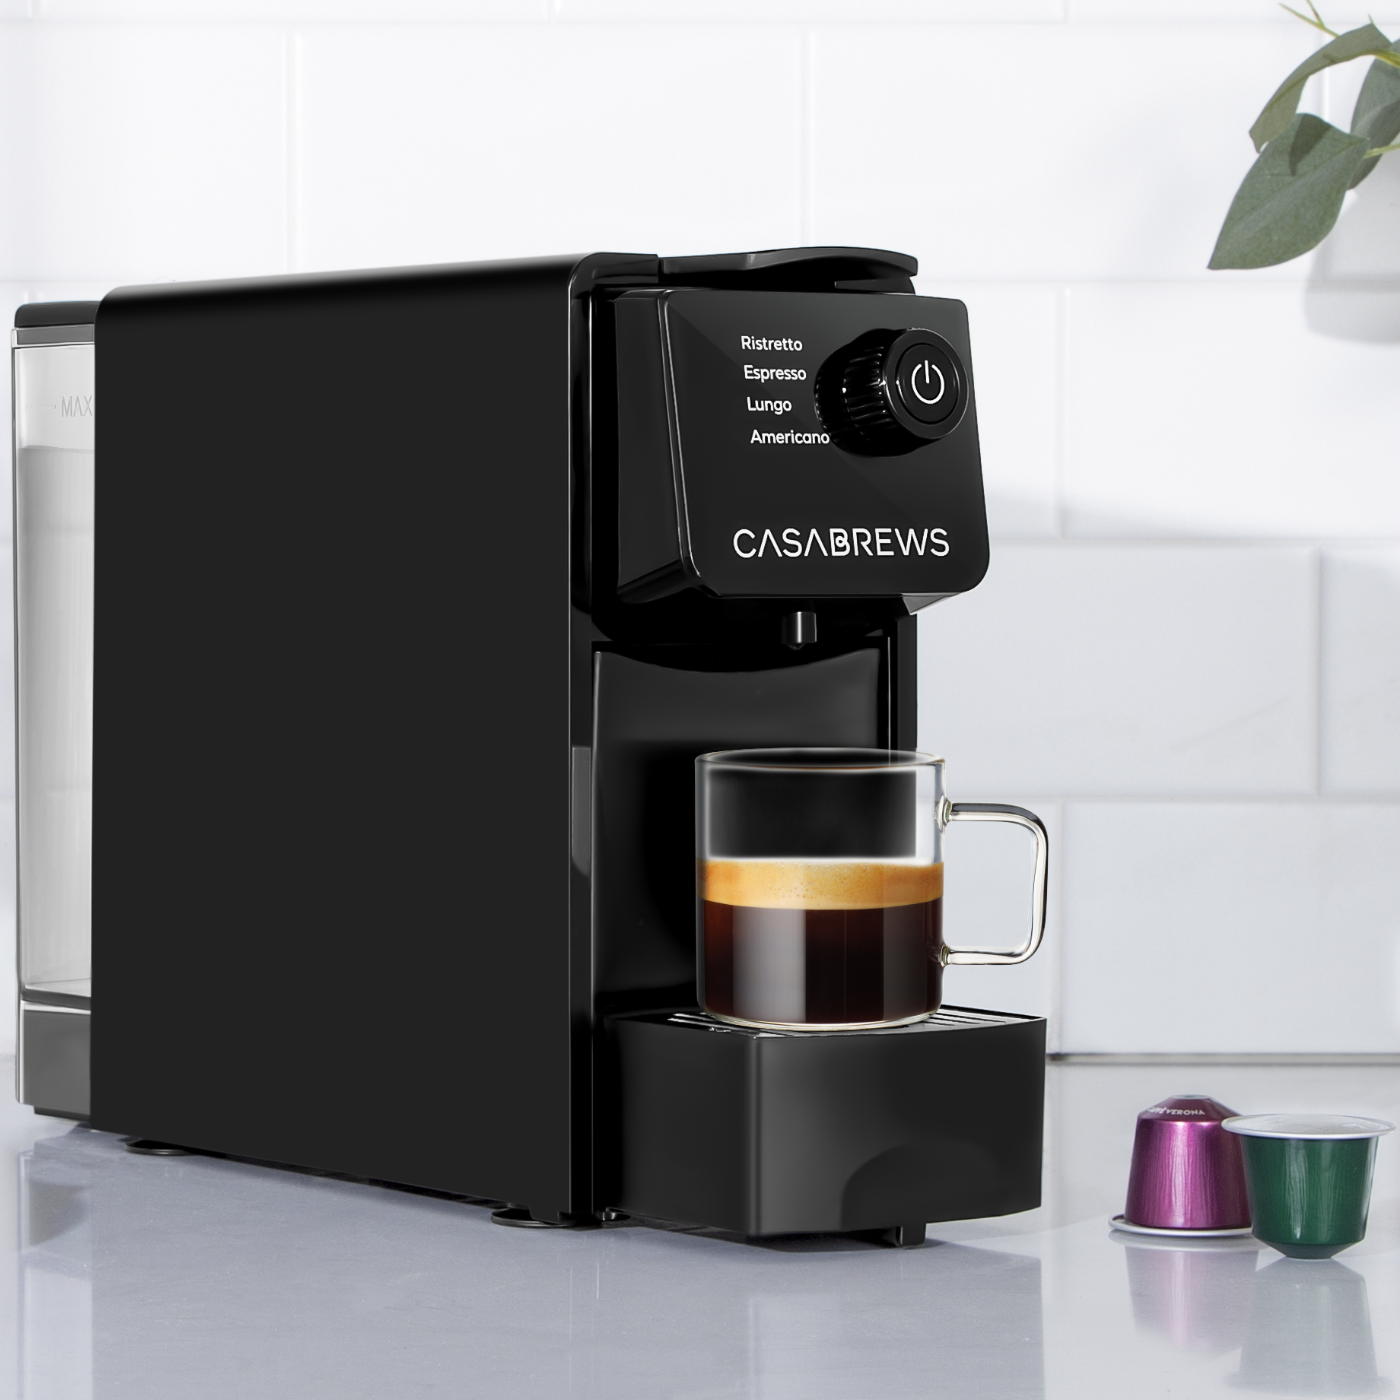 CASABREWS CM7036E™ Espresso Machine for Nespresso Original Pods, 20 Bar Coffee Machine with 4 Brewing Modes, Compact Capsule Coffee Maker